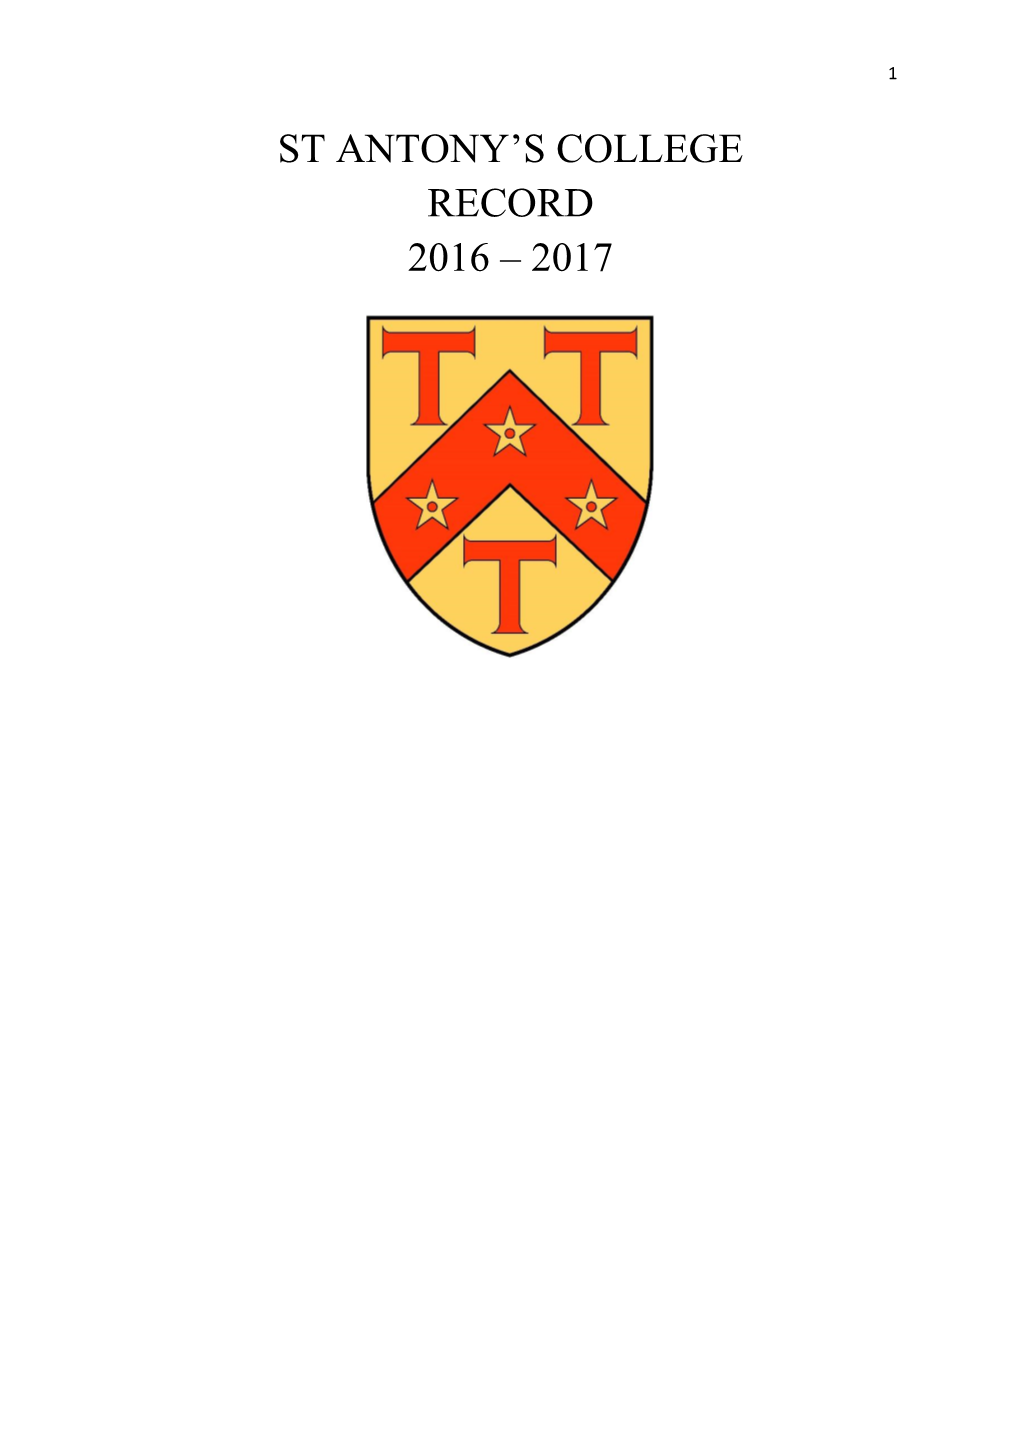 St Antony's College Record 2016